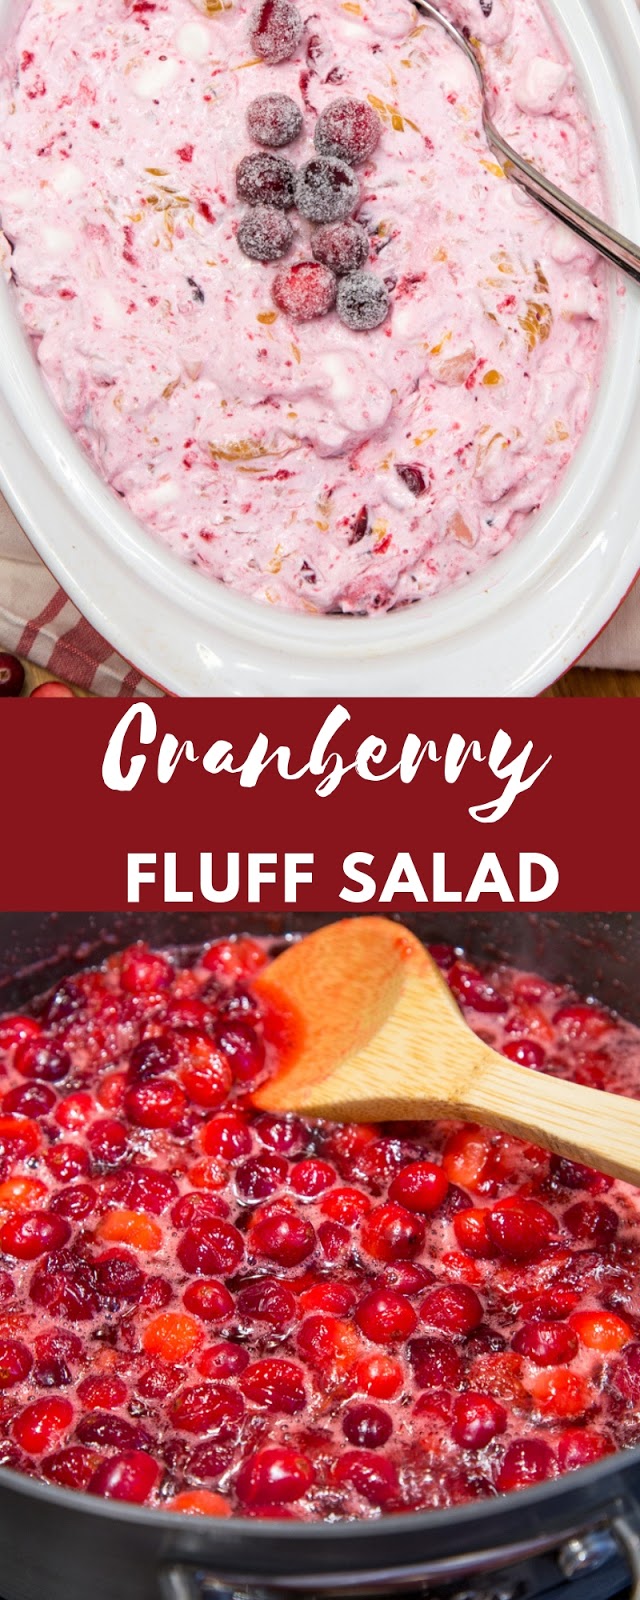 Cranberry Fluff Salad